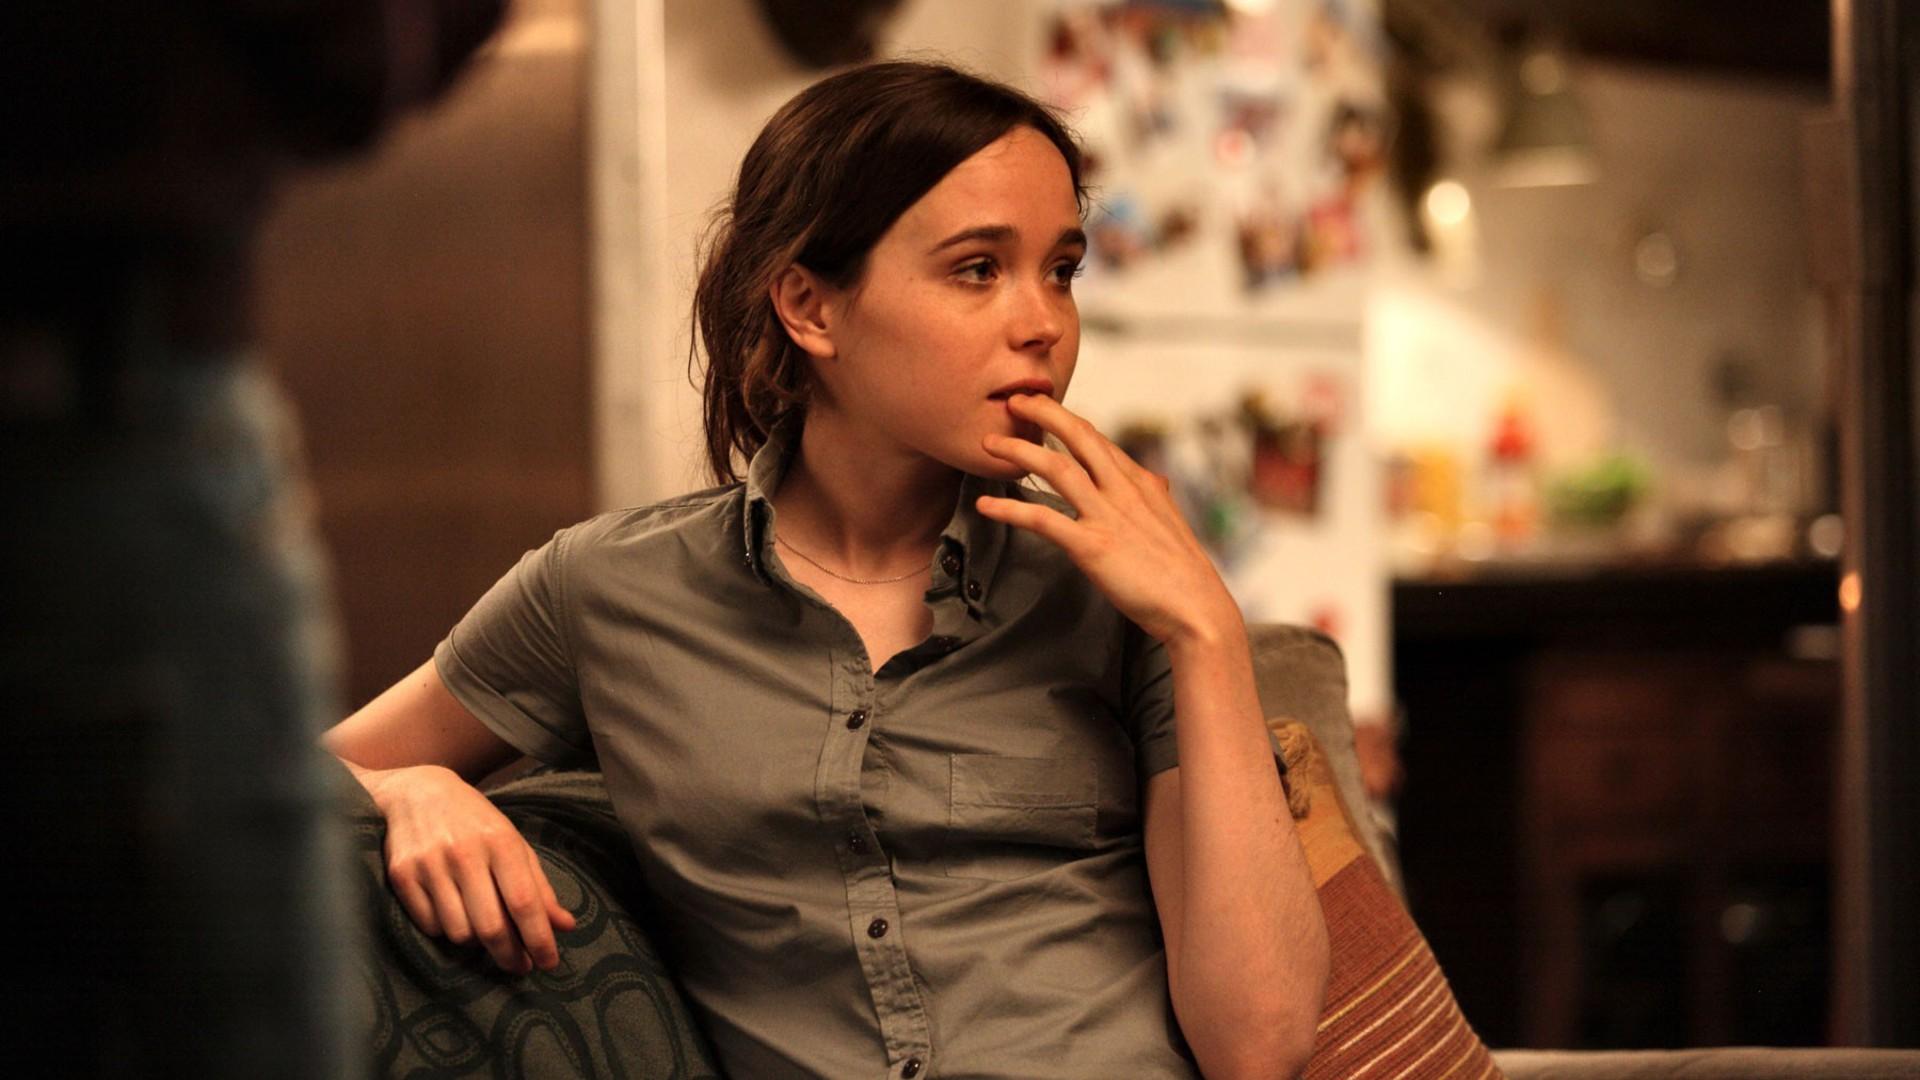 Ellen Page Set To Star in the Netflix Series UMBRELLA ACADEMY